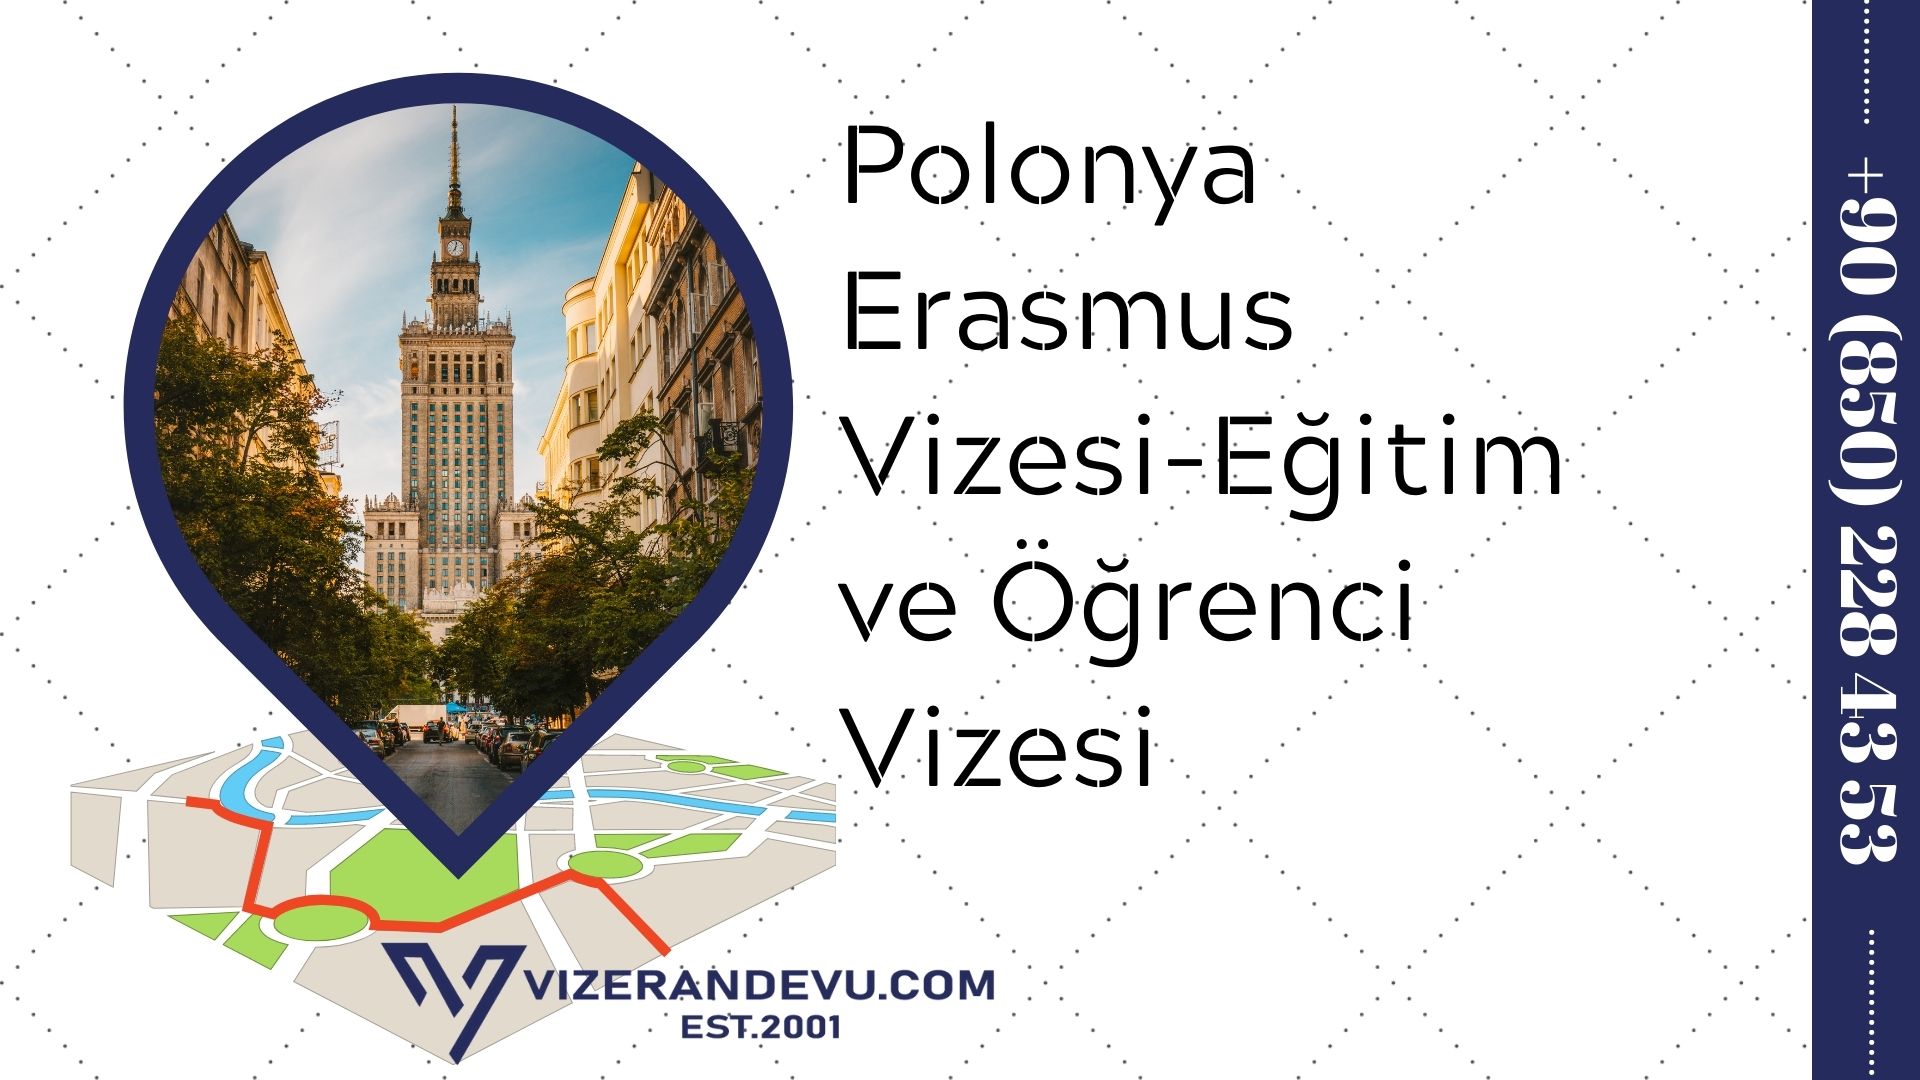 Polonya Erasmus Vizesi-Eğitim ve Öğrenci Vizesi